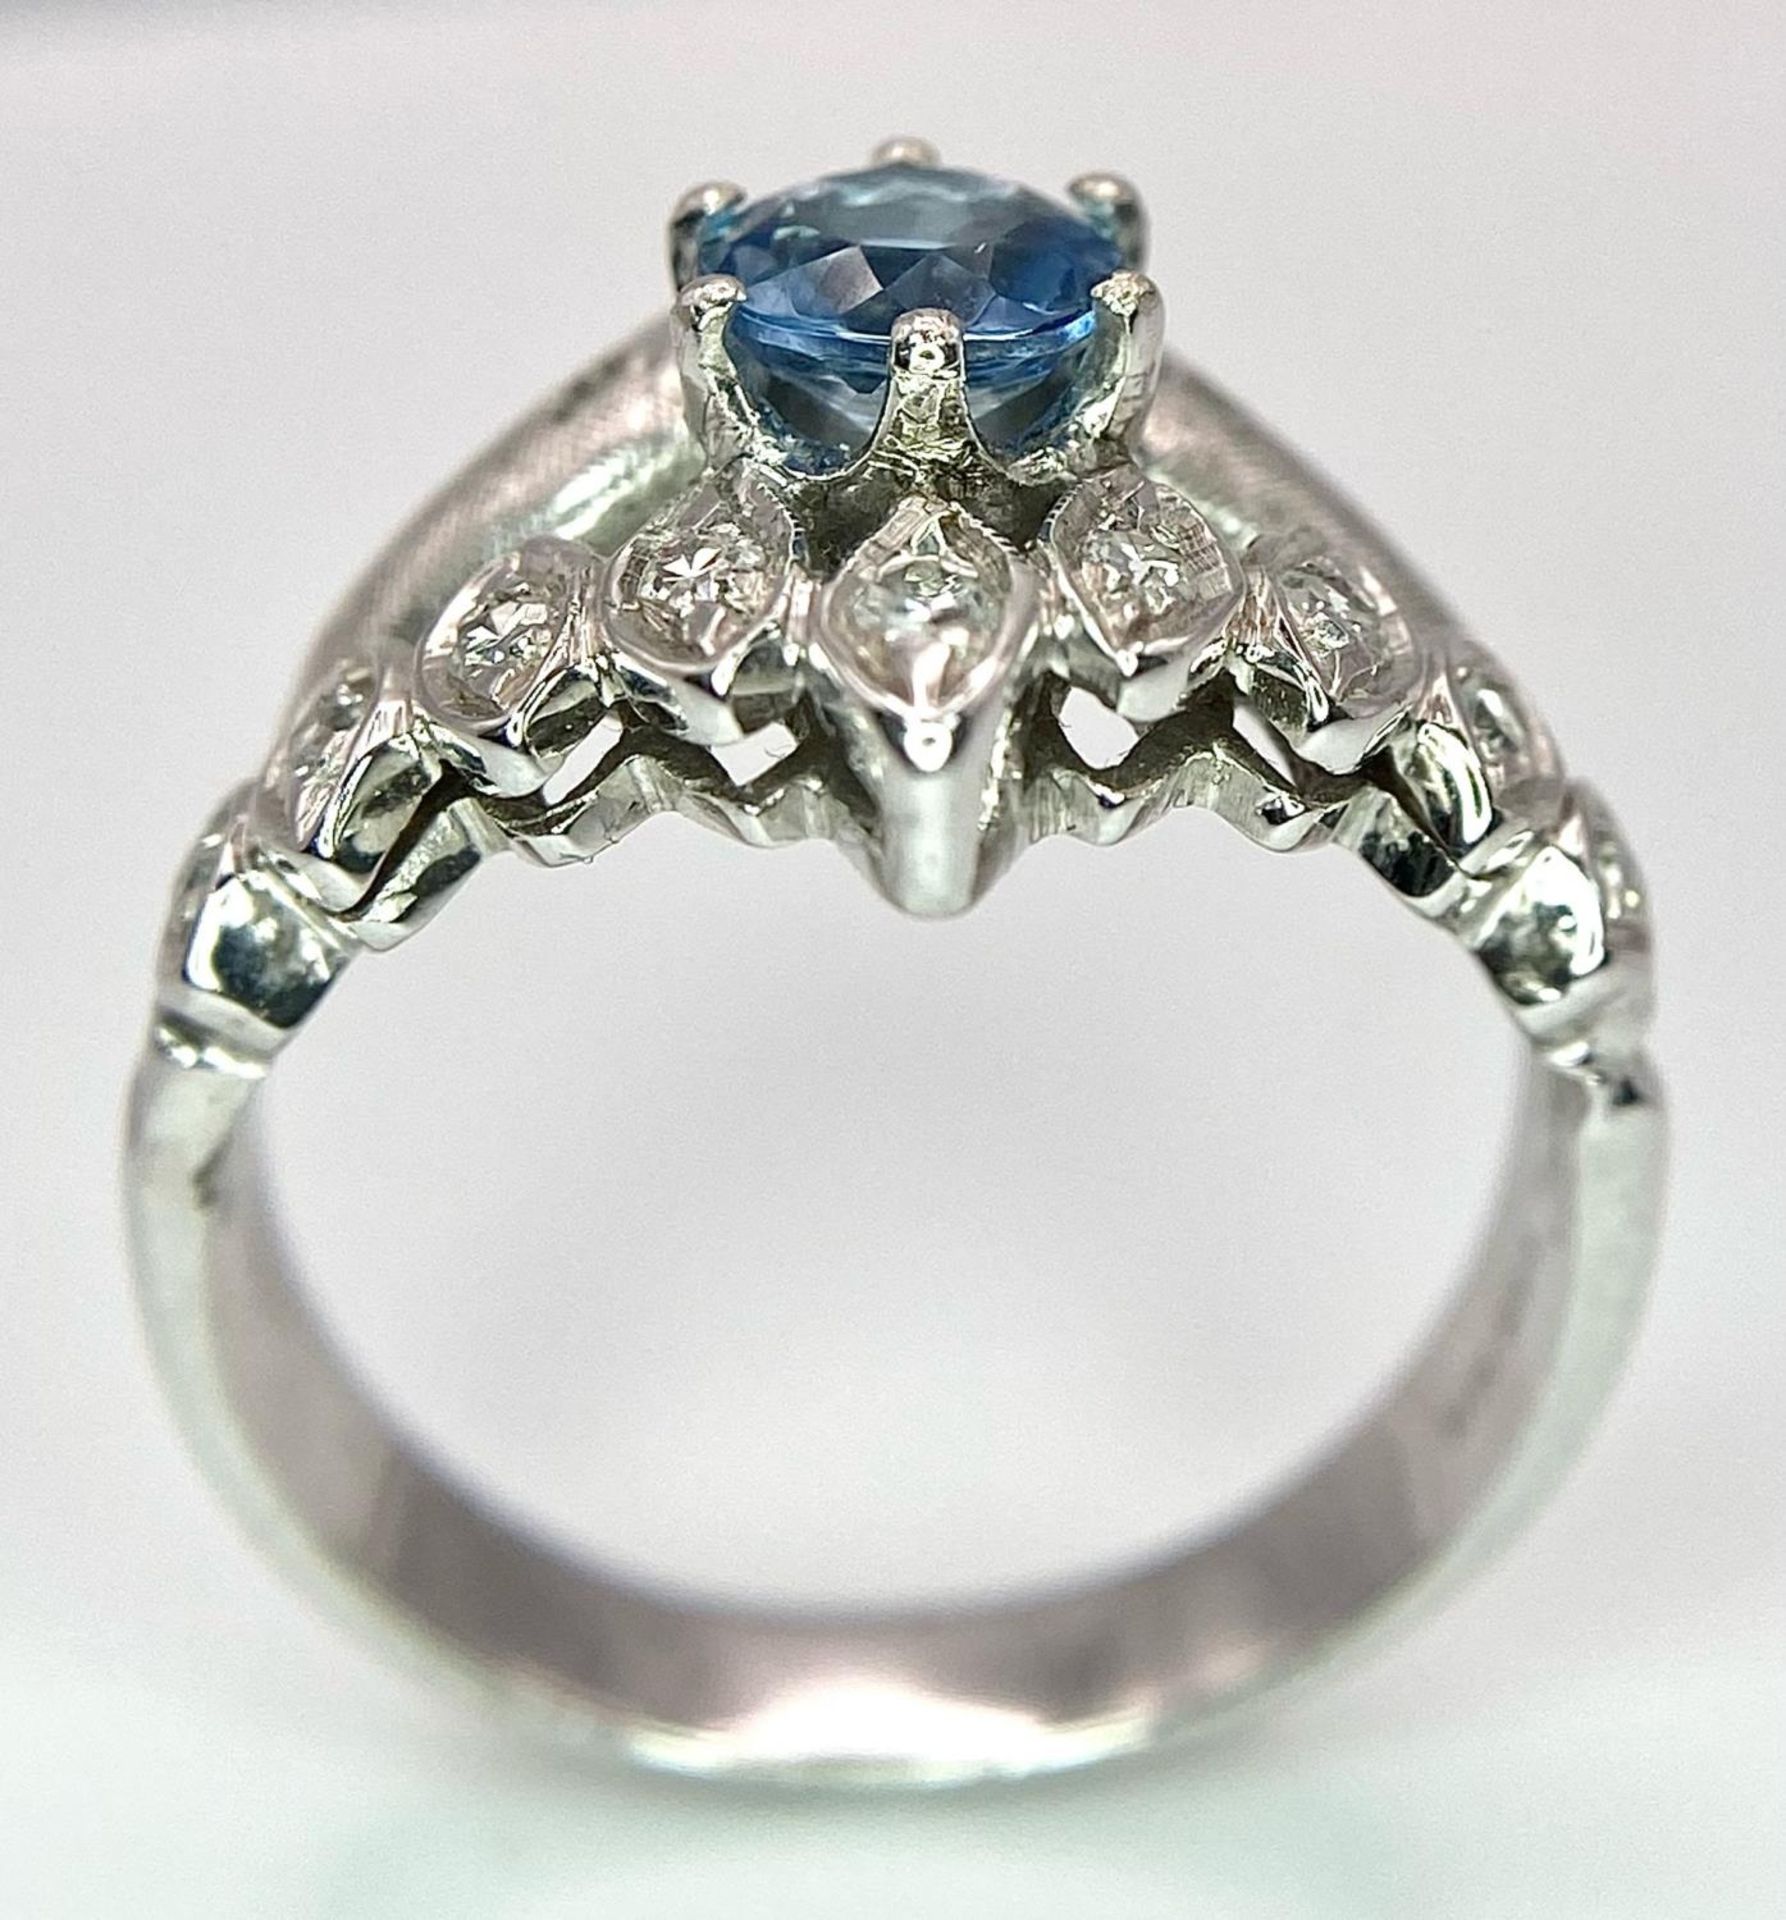 A 14K WHITE GOLD DIAMOND & BLUE TOPAZ RING - 6.2G. SIZE Q - Bild 3 aus 6